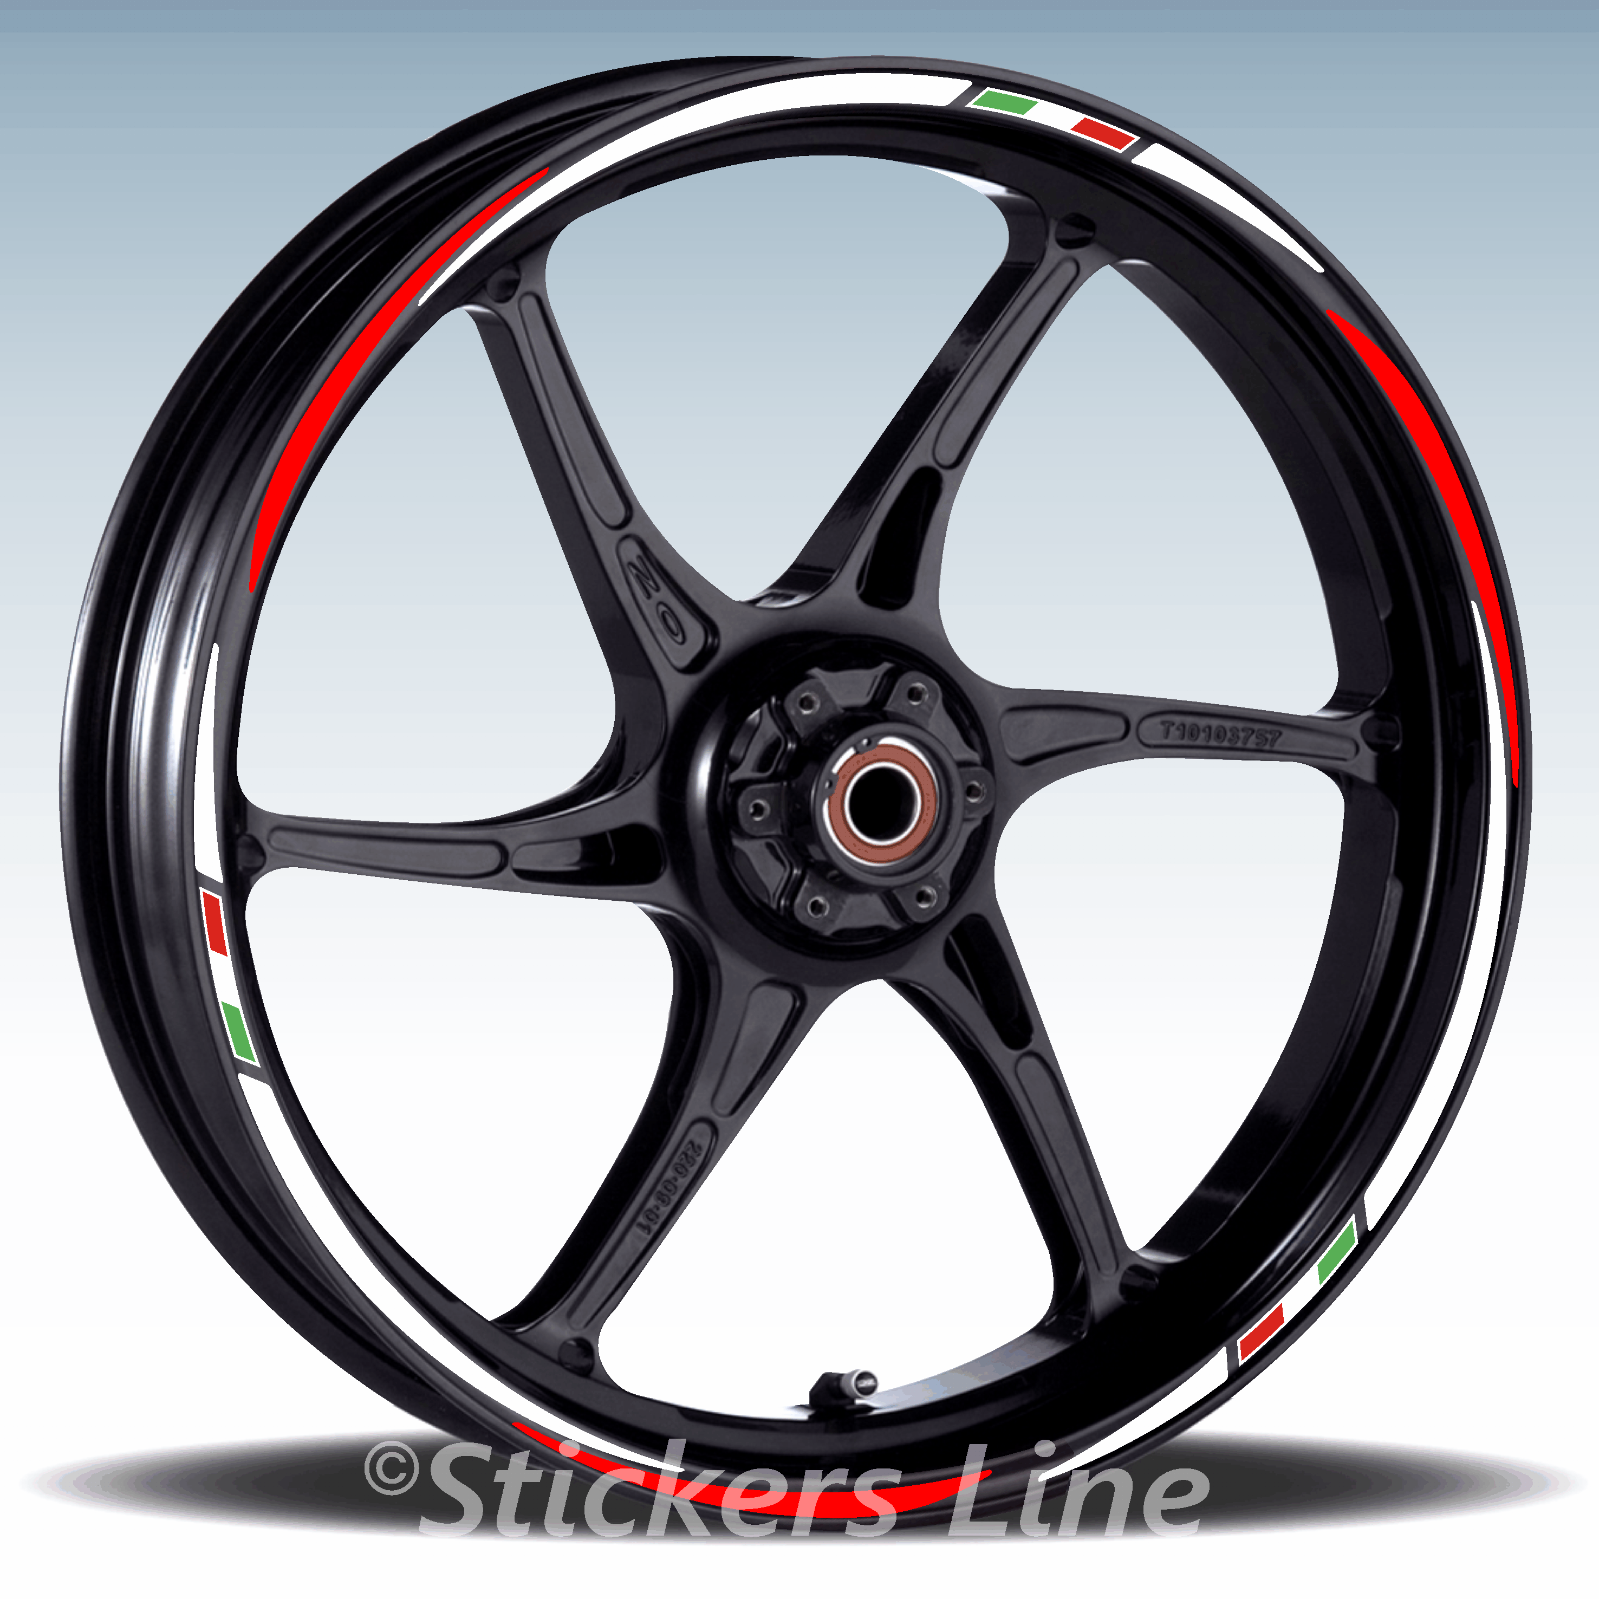 Adesivi ruote moto strisce cerchi BENELLI 302R 302 R wheels stickers racing3 